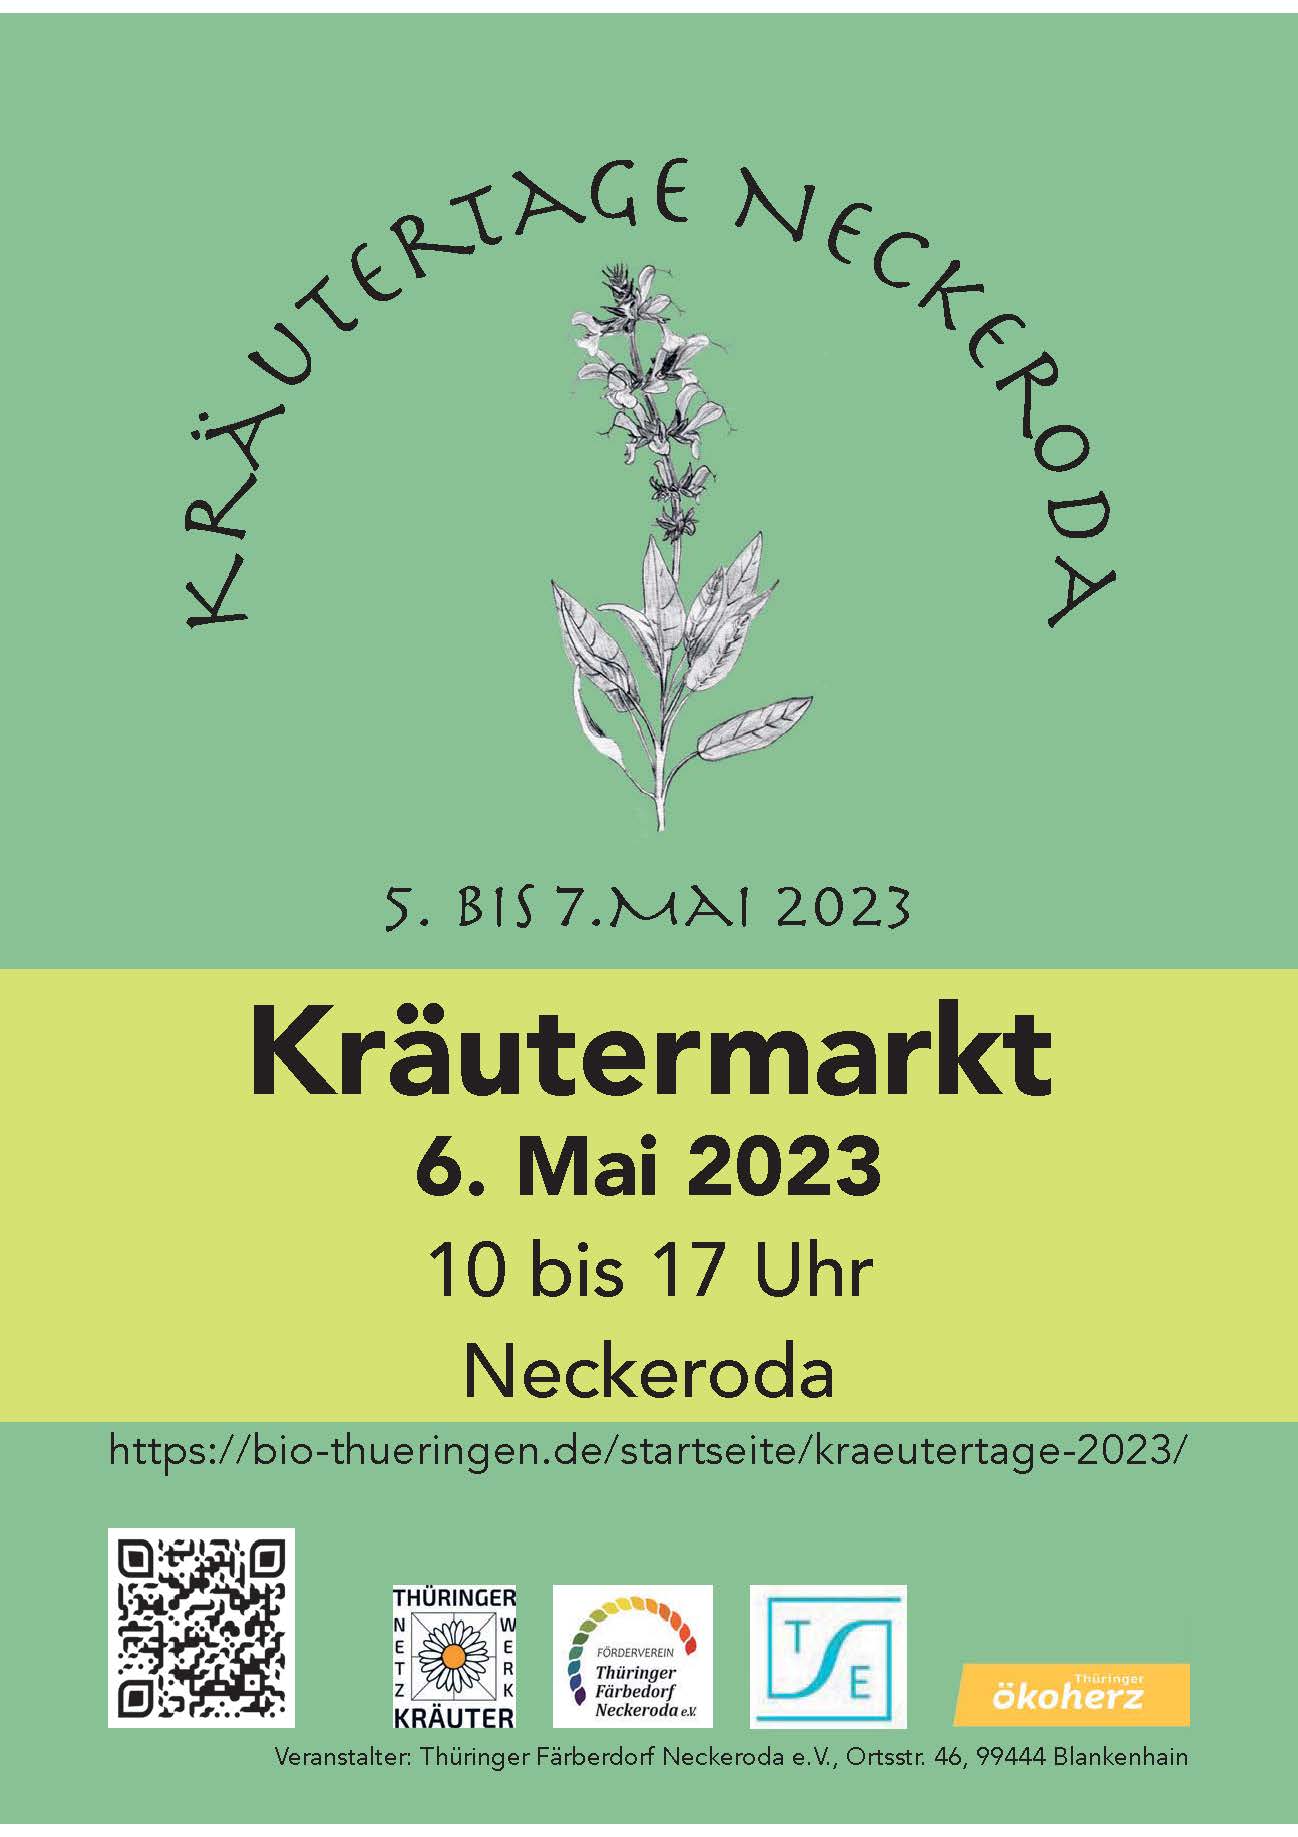 You are currently viewing Kräutertage Neckeroda vom 5. bis 7. Mai 2023